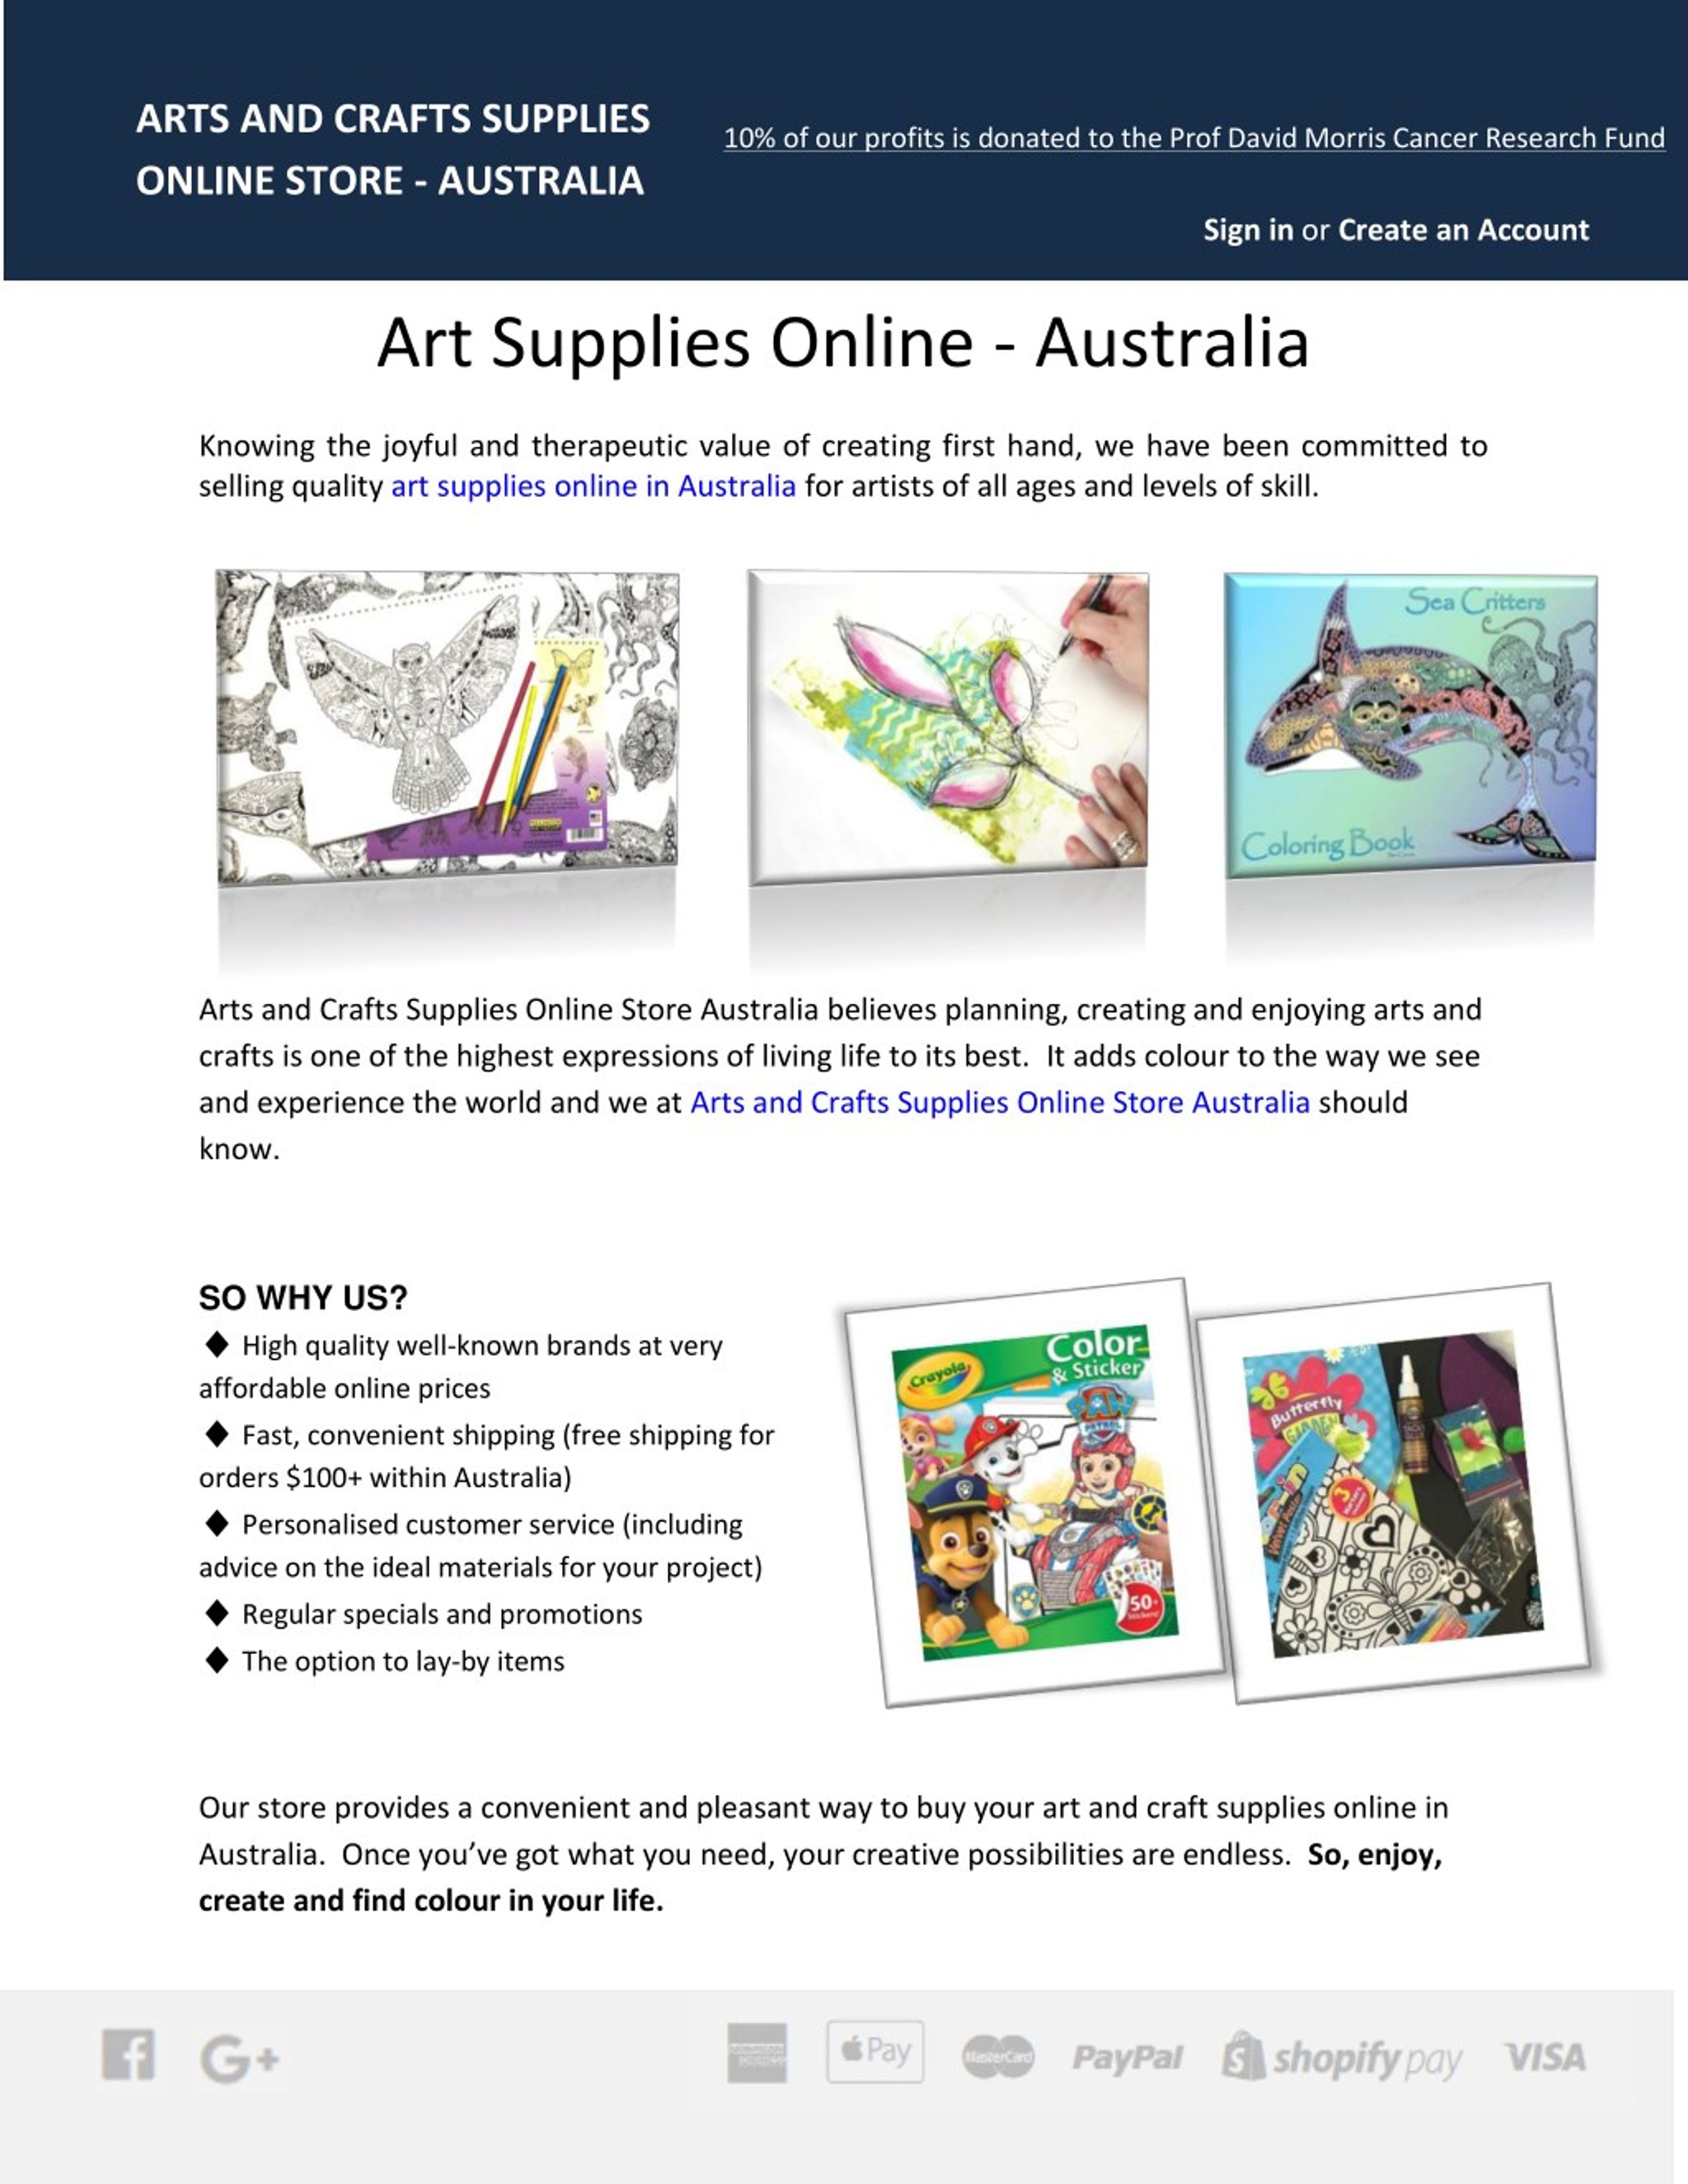 craft supplies australia